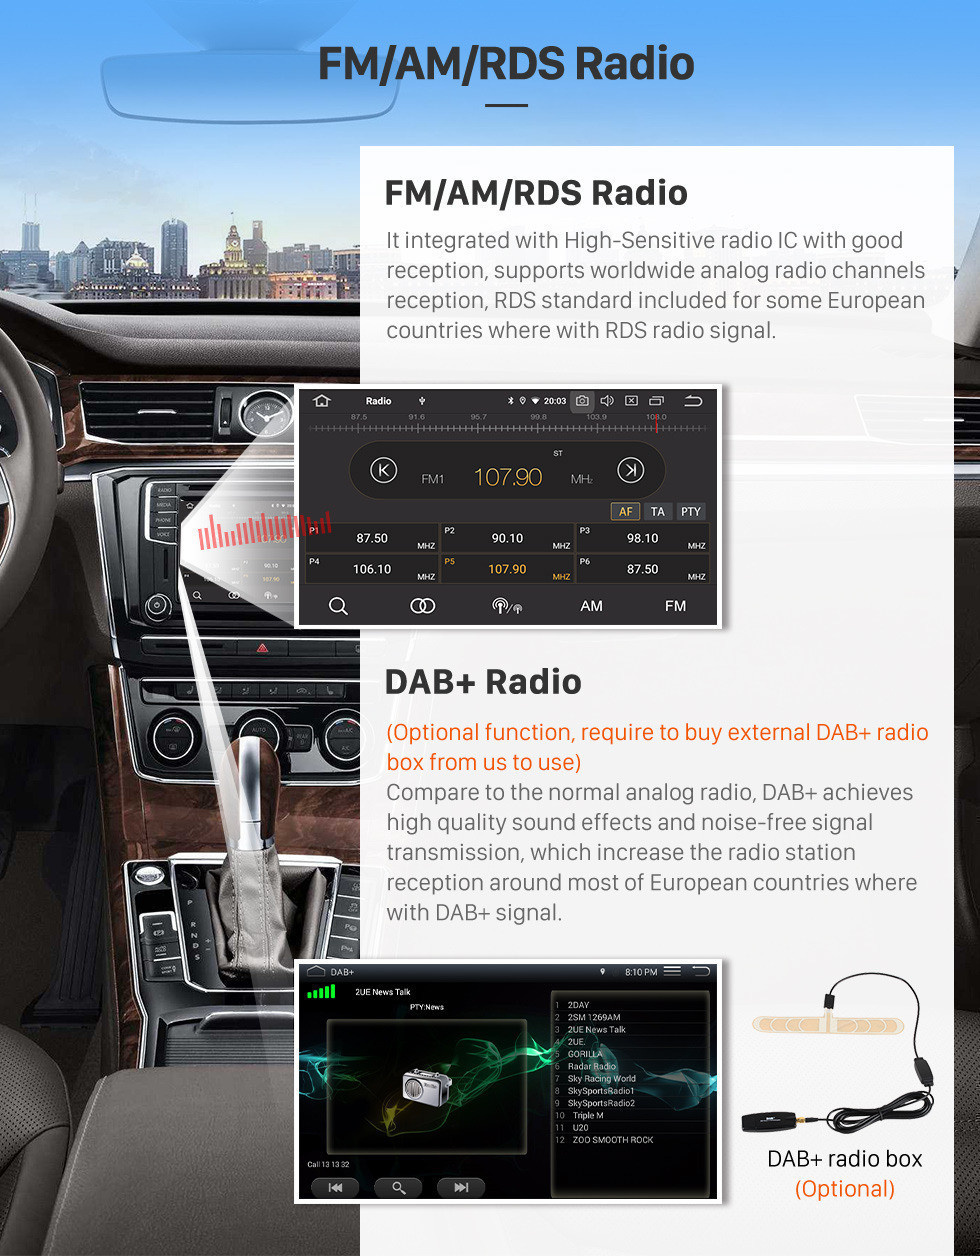 Seicane 10,1 pouces Android 11.0 2019 Toyota Corolla Système de navigation GPS Support Radio IPS Plein écran 3G WiFi Bluetooth OBD2 Commande au volant